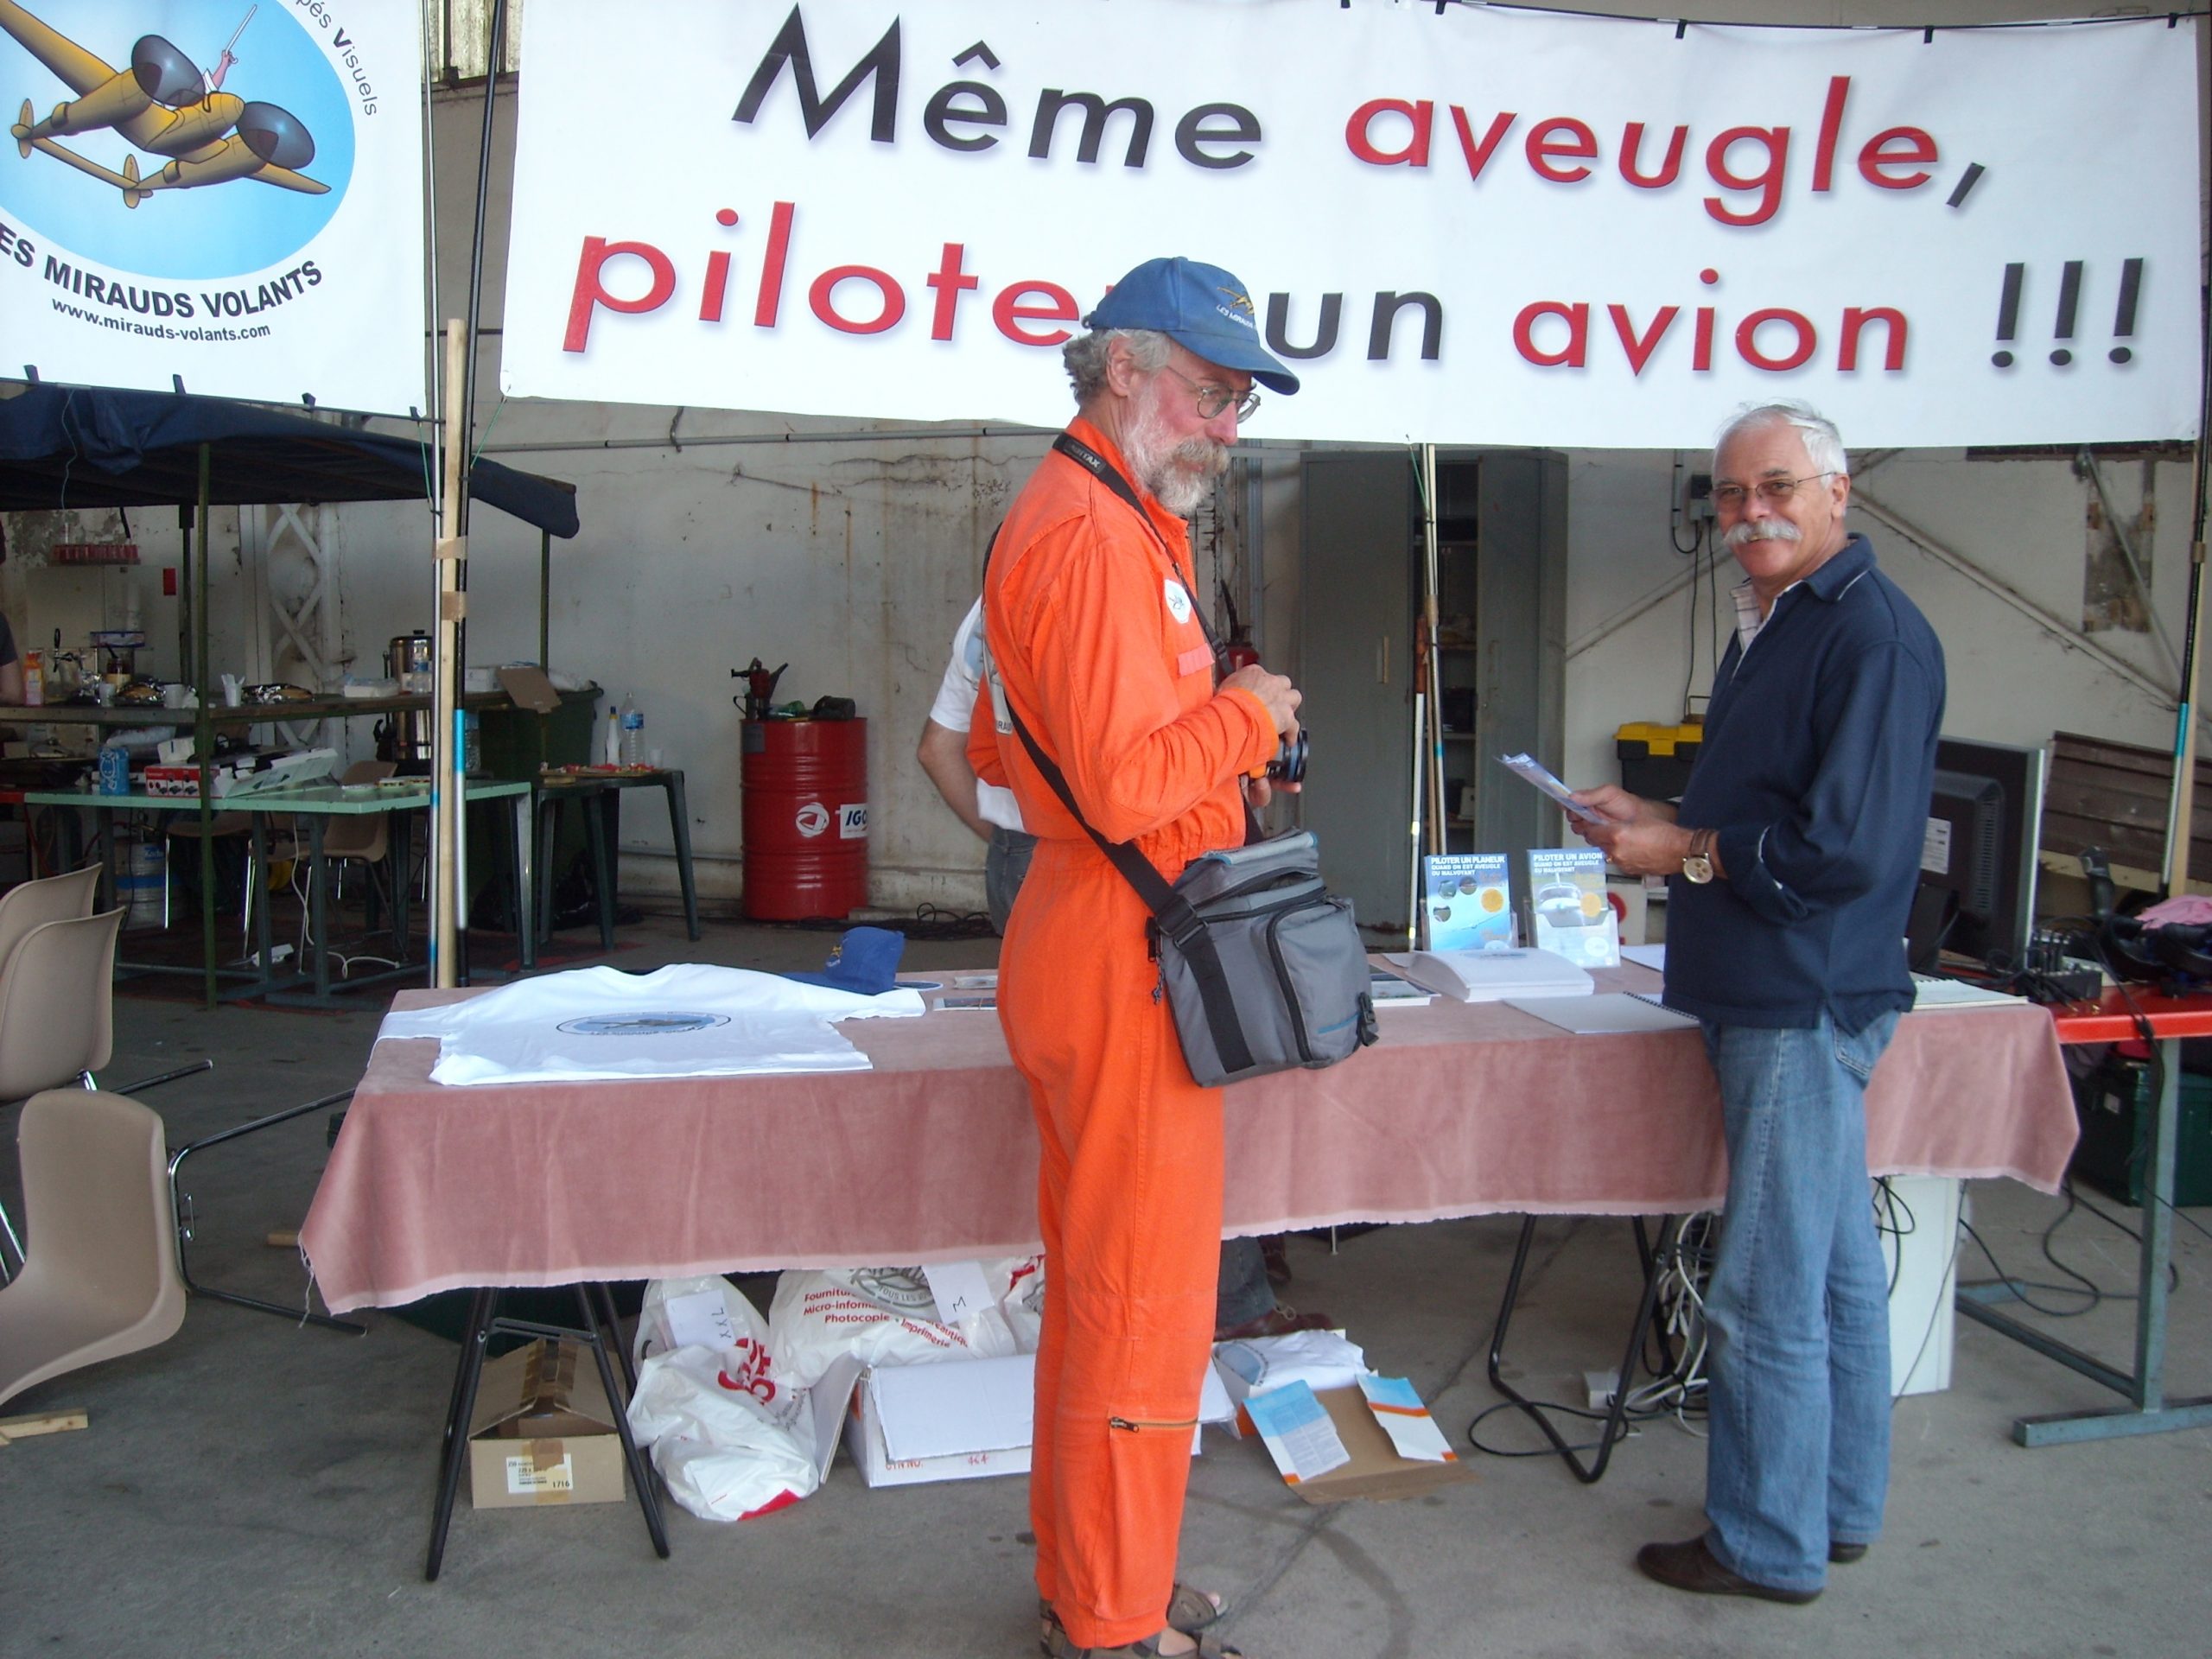 A Amiens, en 2009, Patrice, debout de profil dans sa combinaison orange, se tient devant le stand des Mirauds, au-dessus duquel une banderole flotte disant: "Même aveugle, pilotez un avion!"